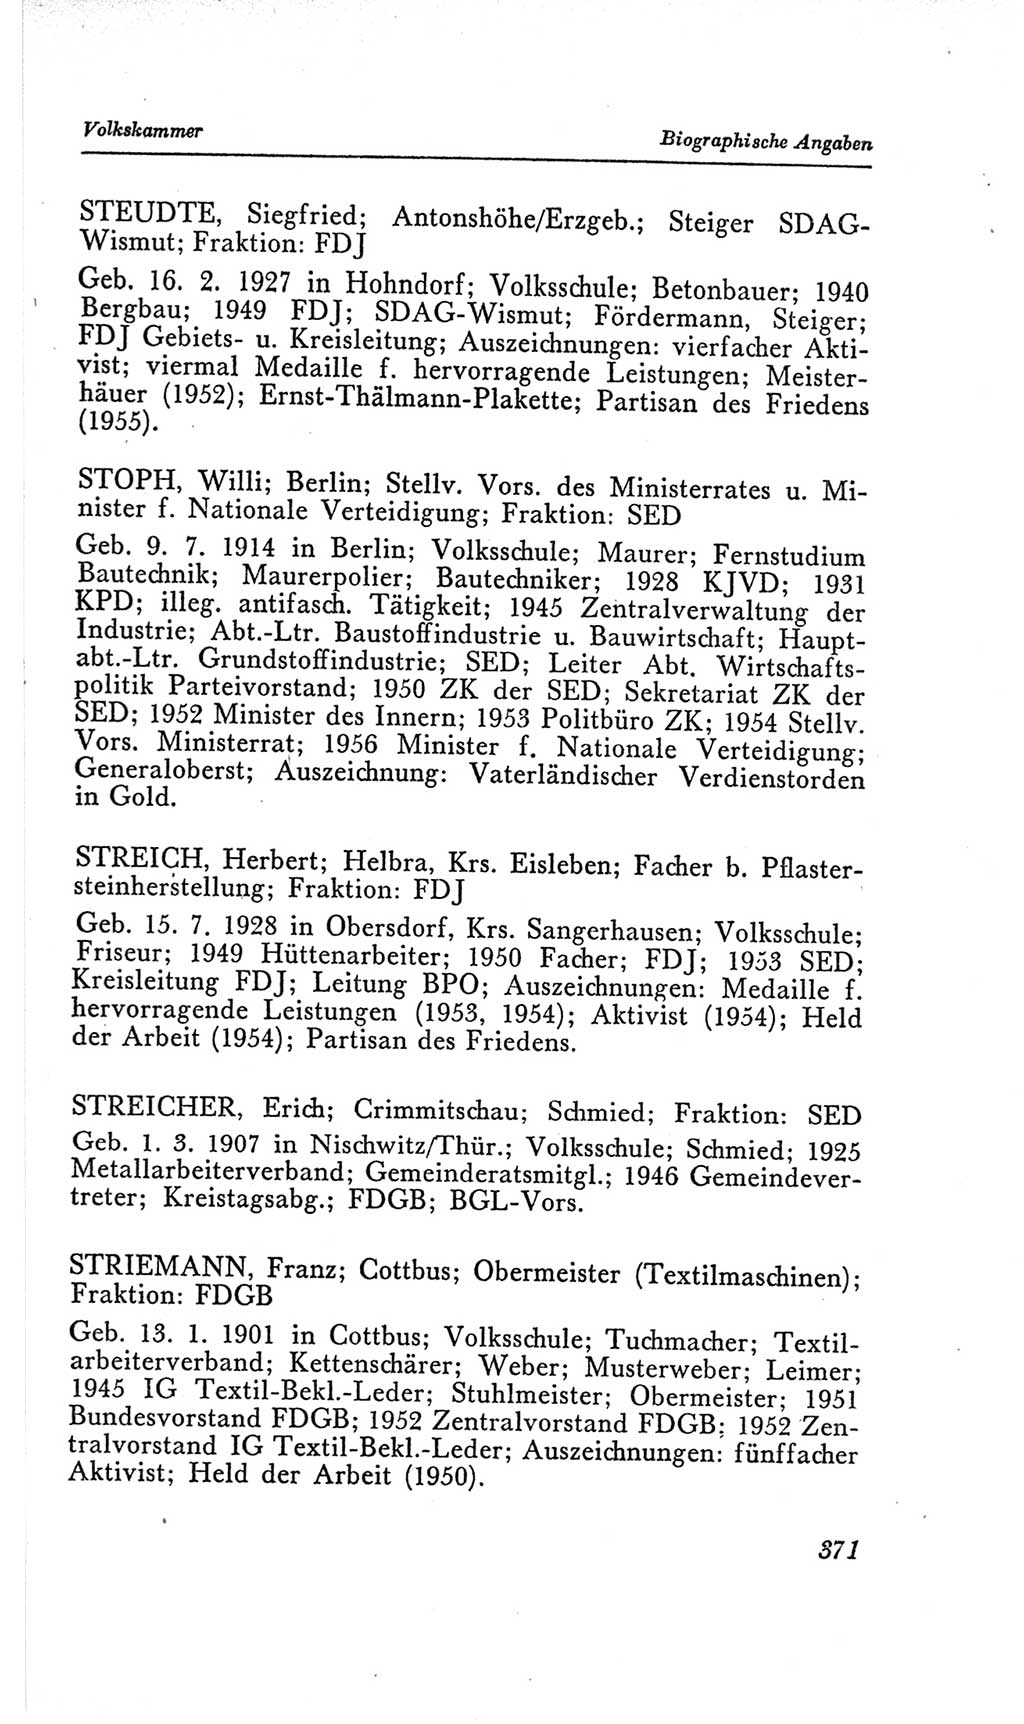 Handbuch der Volkskammer (VK) der Deutschen Demokratischen Republik (DDR), 2. Wahlperiode 1954-1958, Seite 371 (Hdb. VK. DDR, 2. WP. 1954-1958, S. 371)